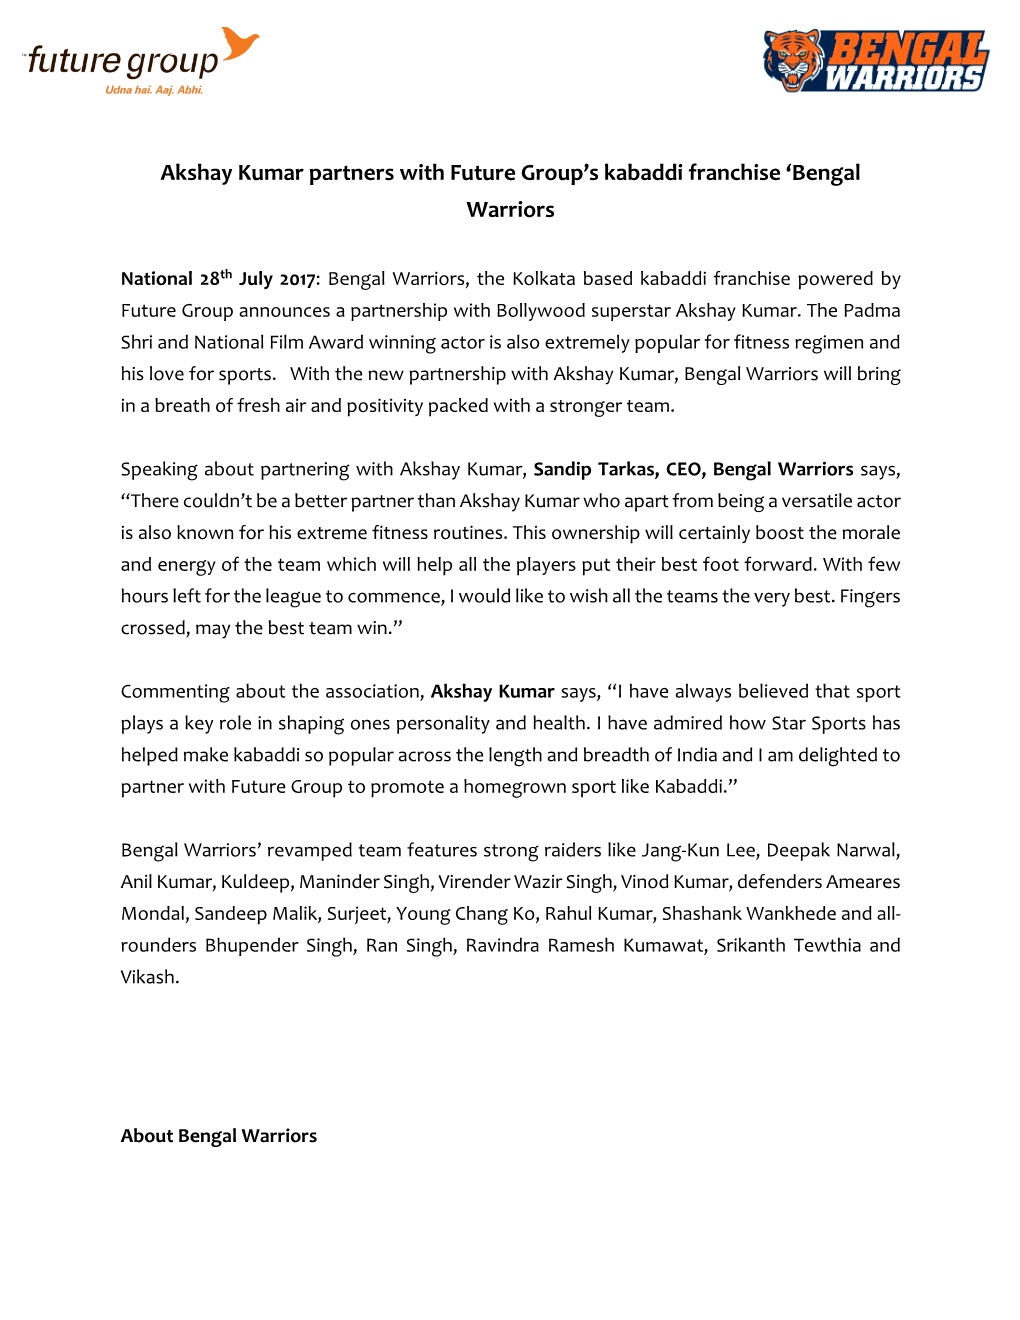 Akshay Kumar Partners with Future Group's Kabaddi Franchise 'Bengal Warriors